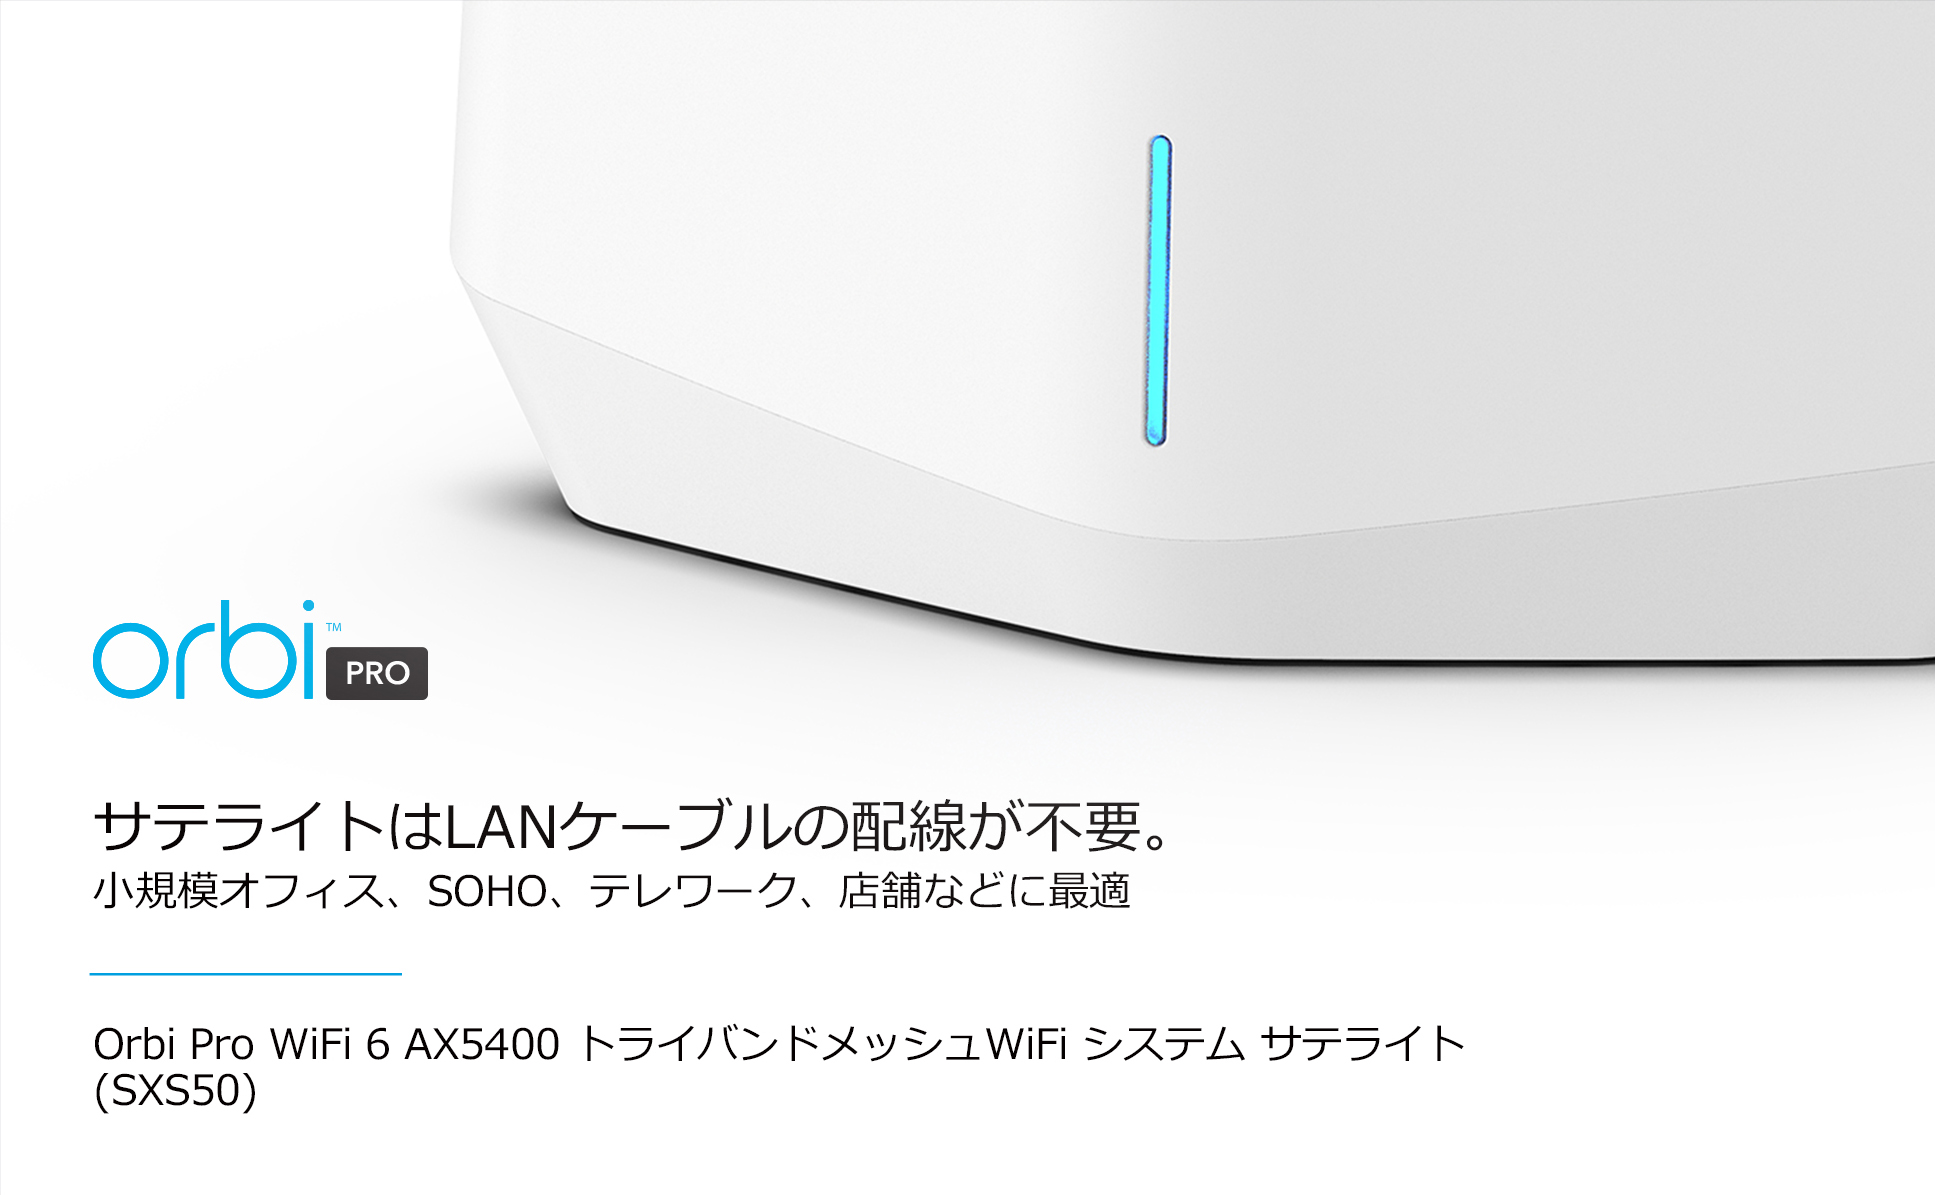 Softbank 4G LTE 専用 IoT M2Mダイヤルアップルータ Rooster AX220S - 3